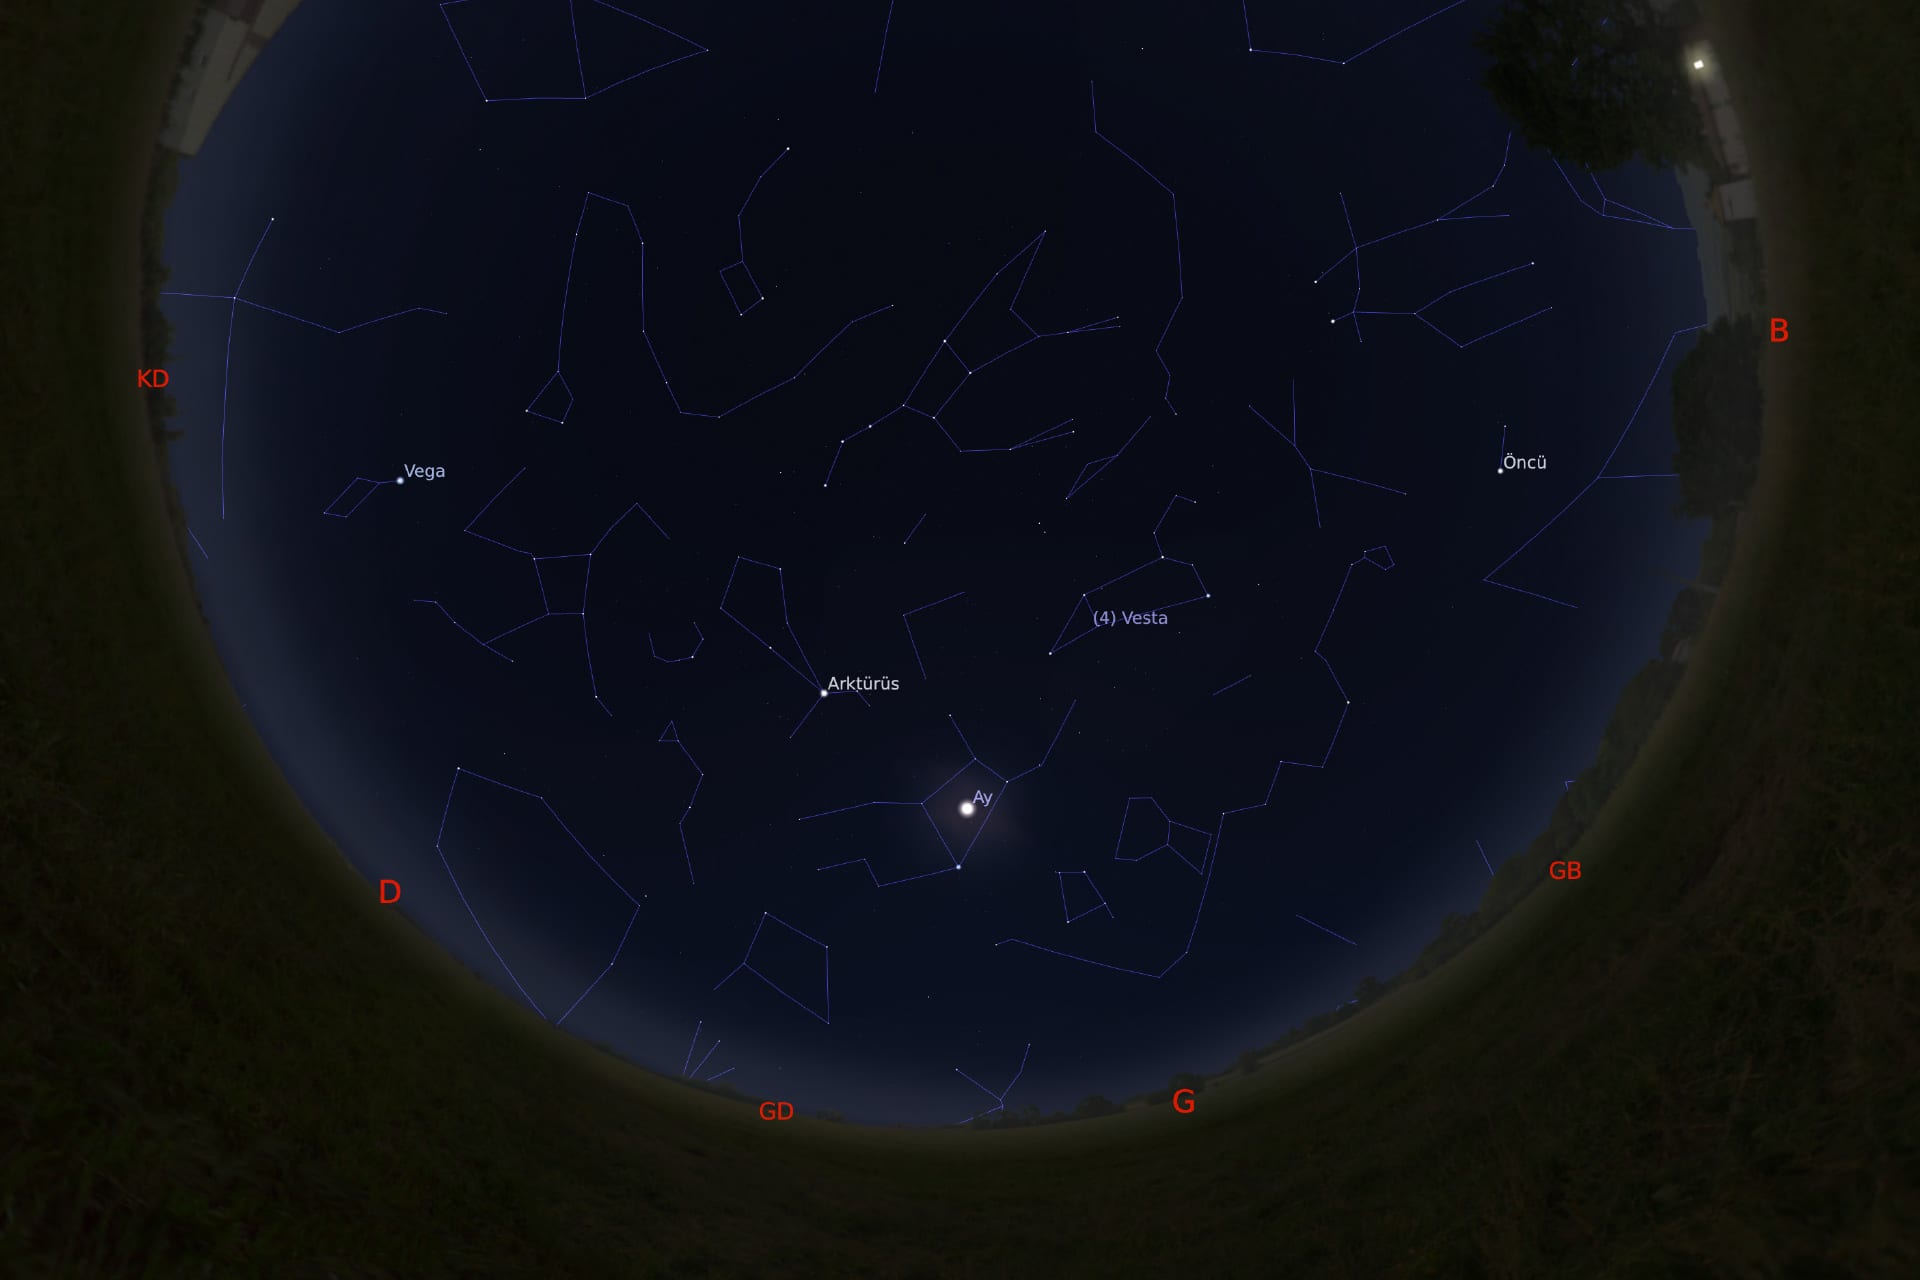 1 Mart 2021 - saat 02:30'daki gökyüzü görüntüsü